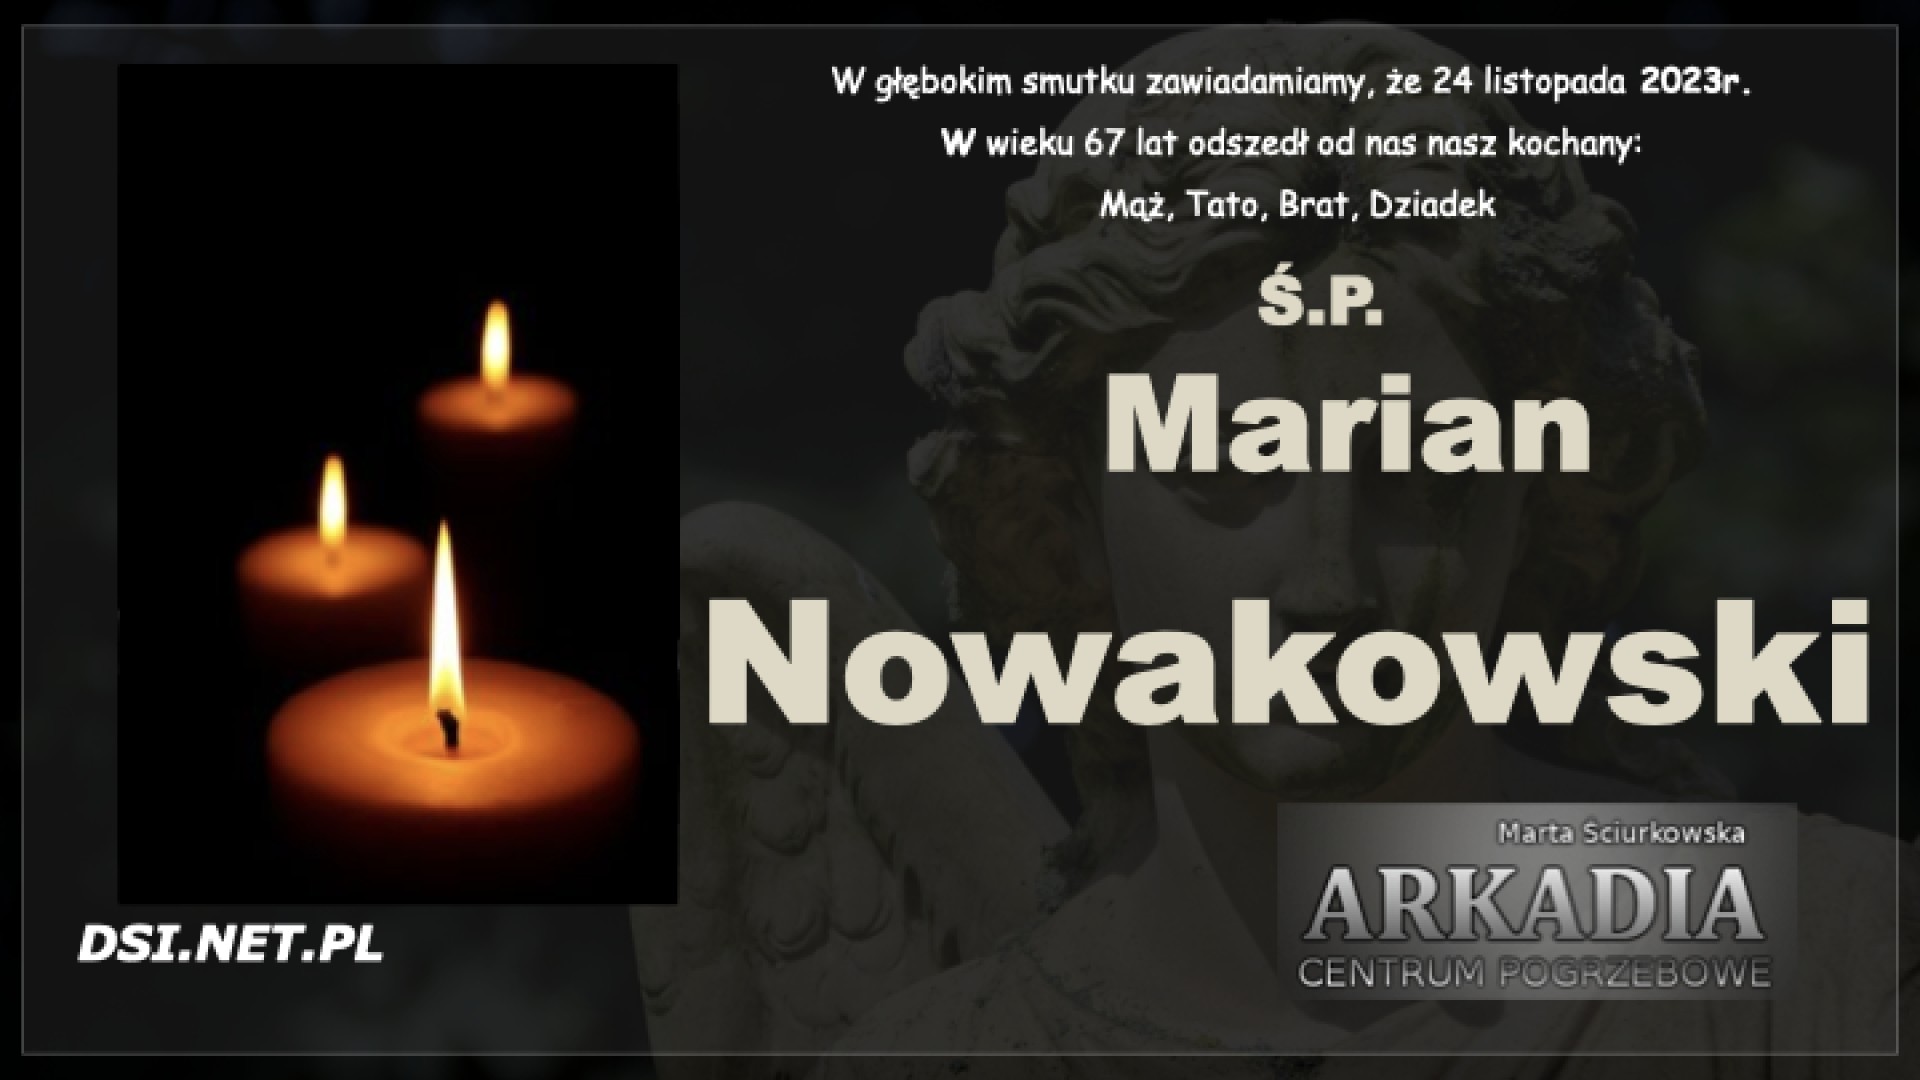 Ś.P. Marian Nowakowski